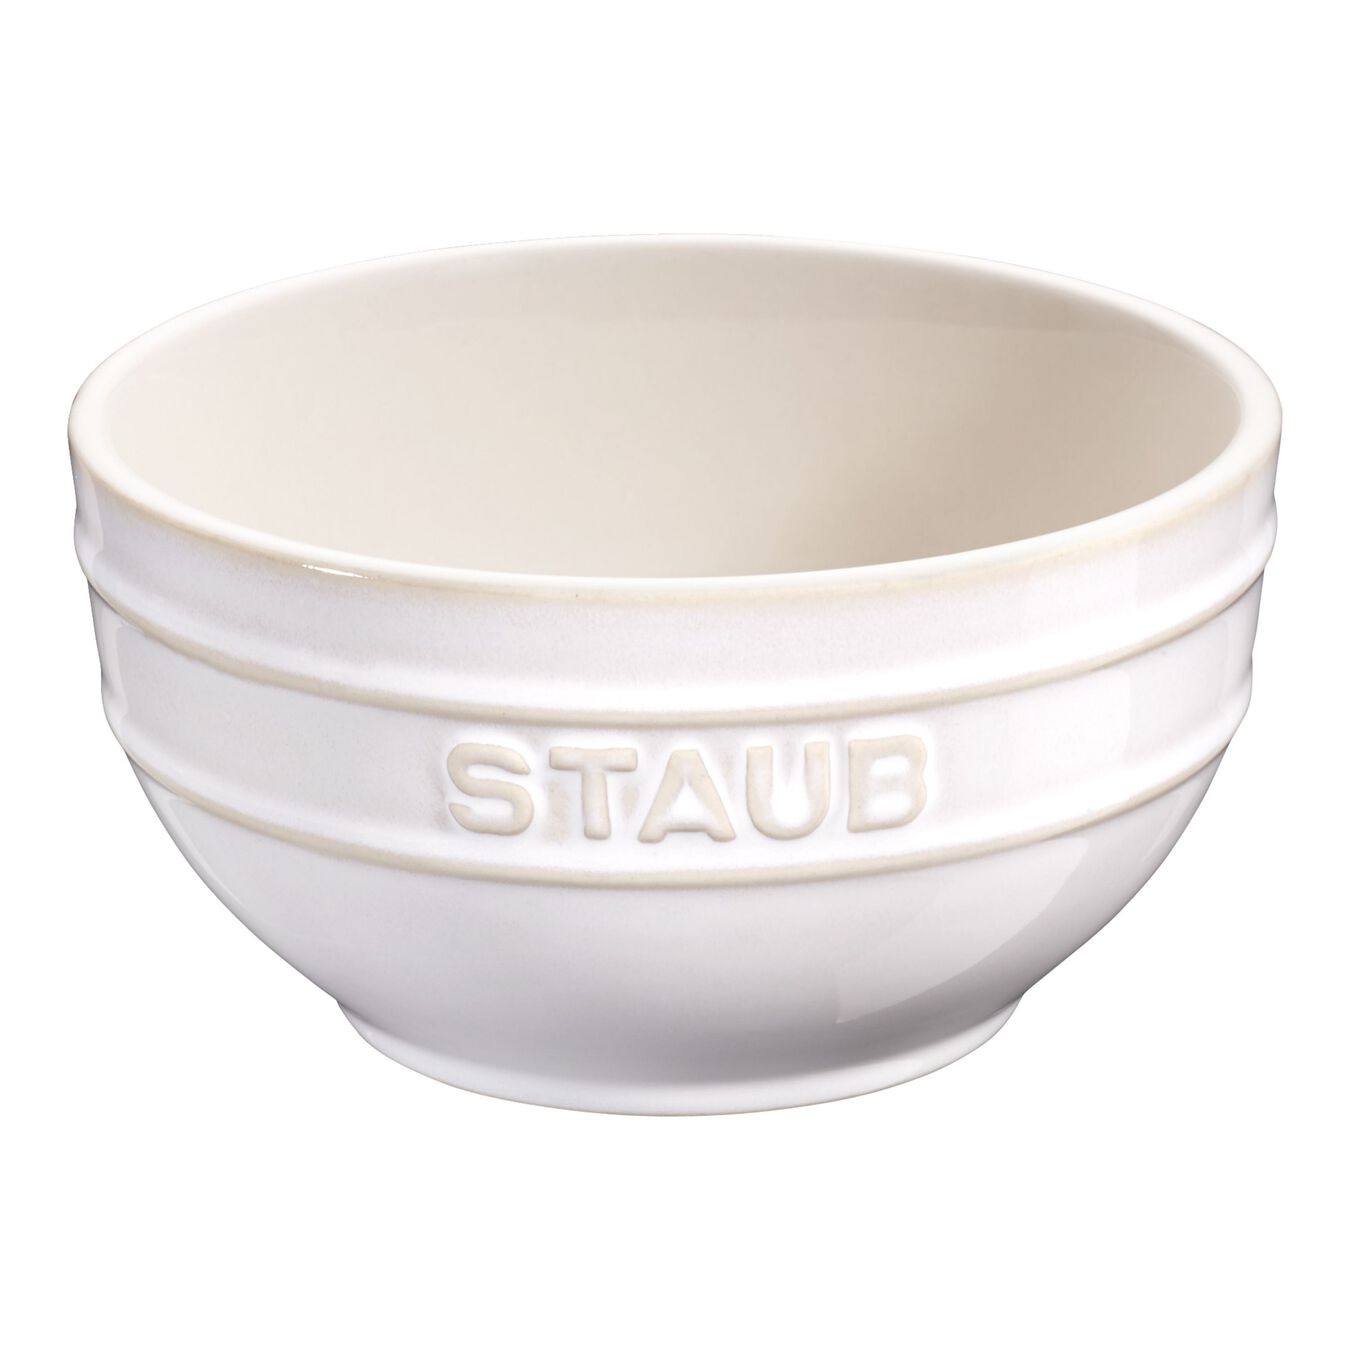 14 cm round Ceramic Bowl ivory-white,,large 1